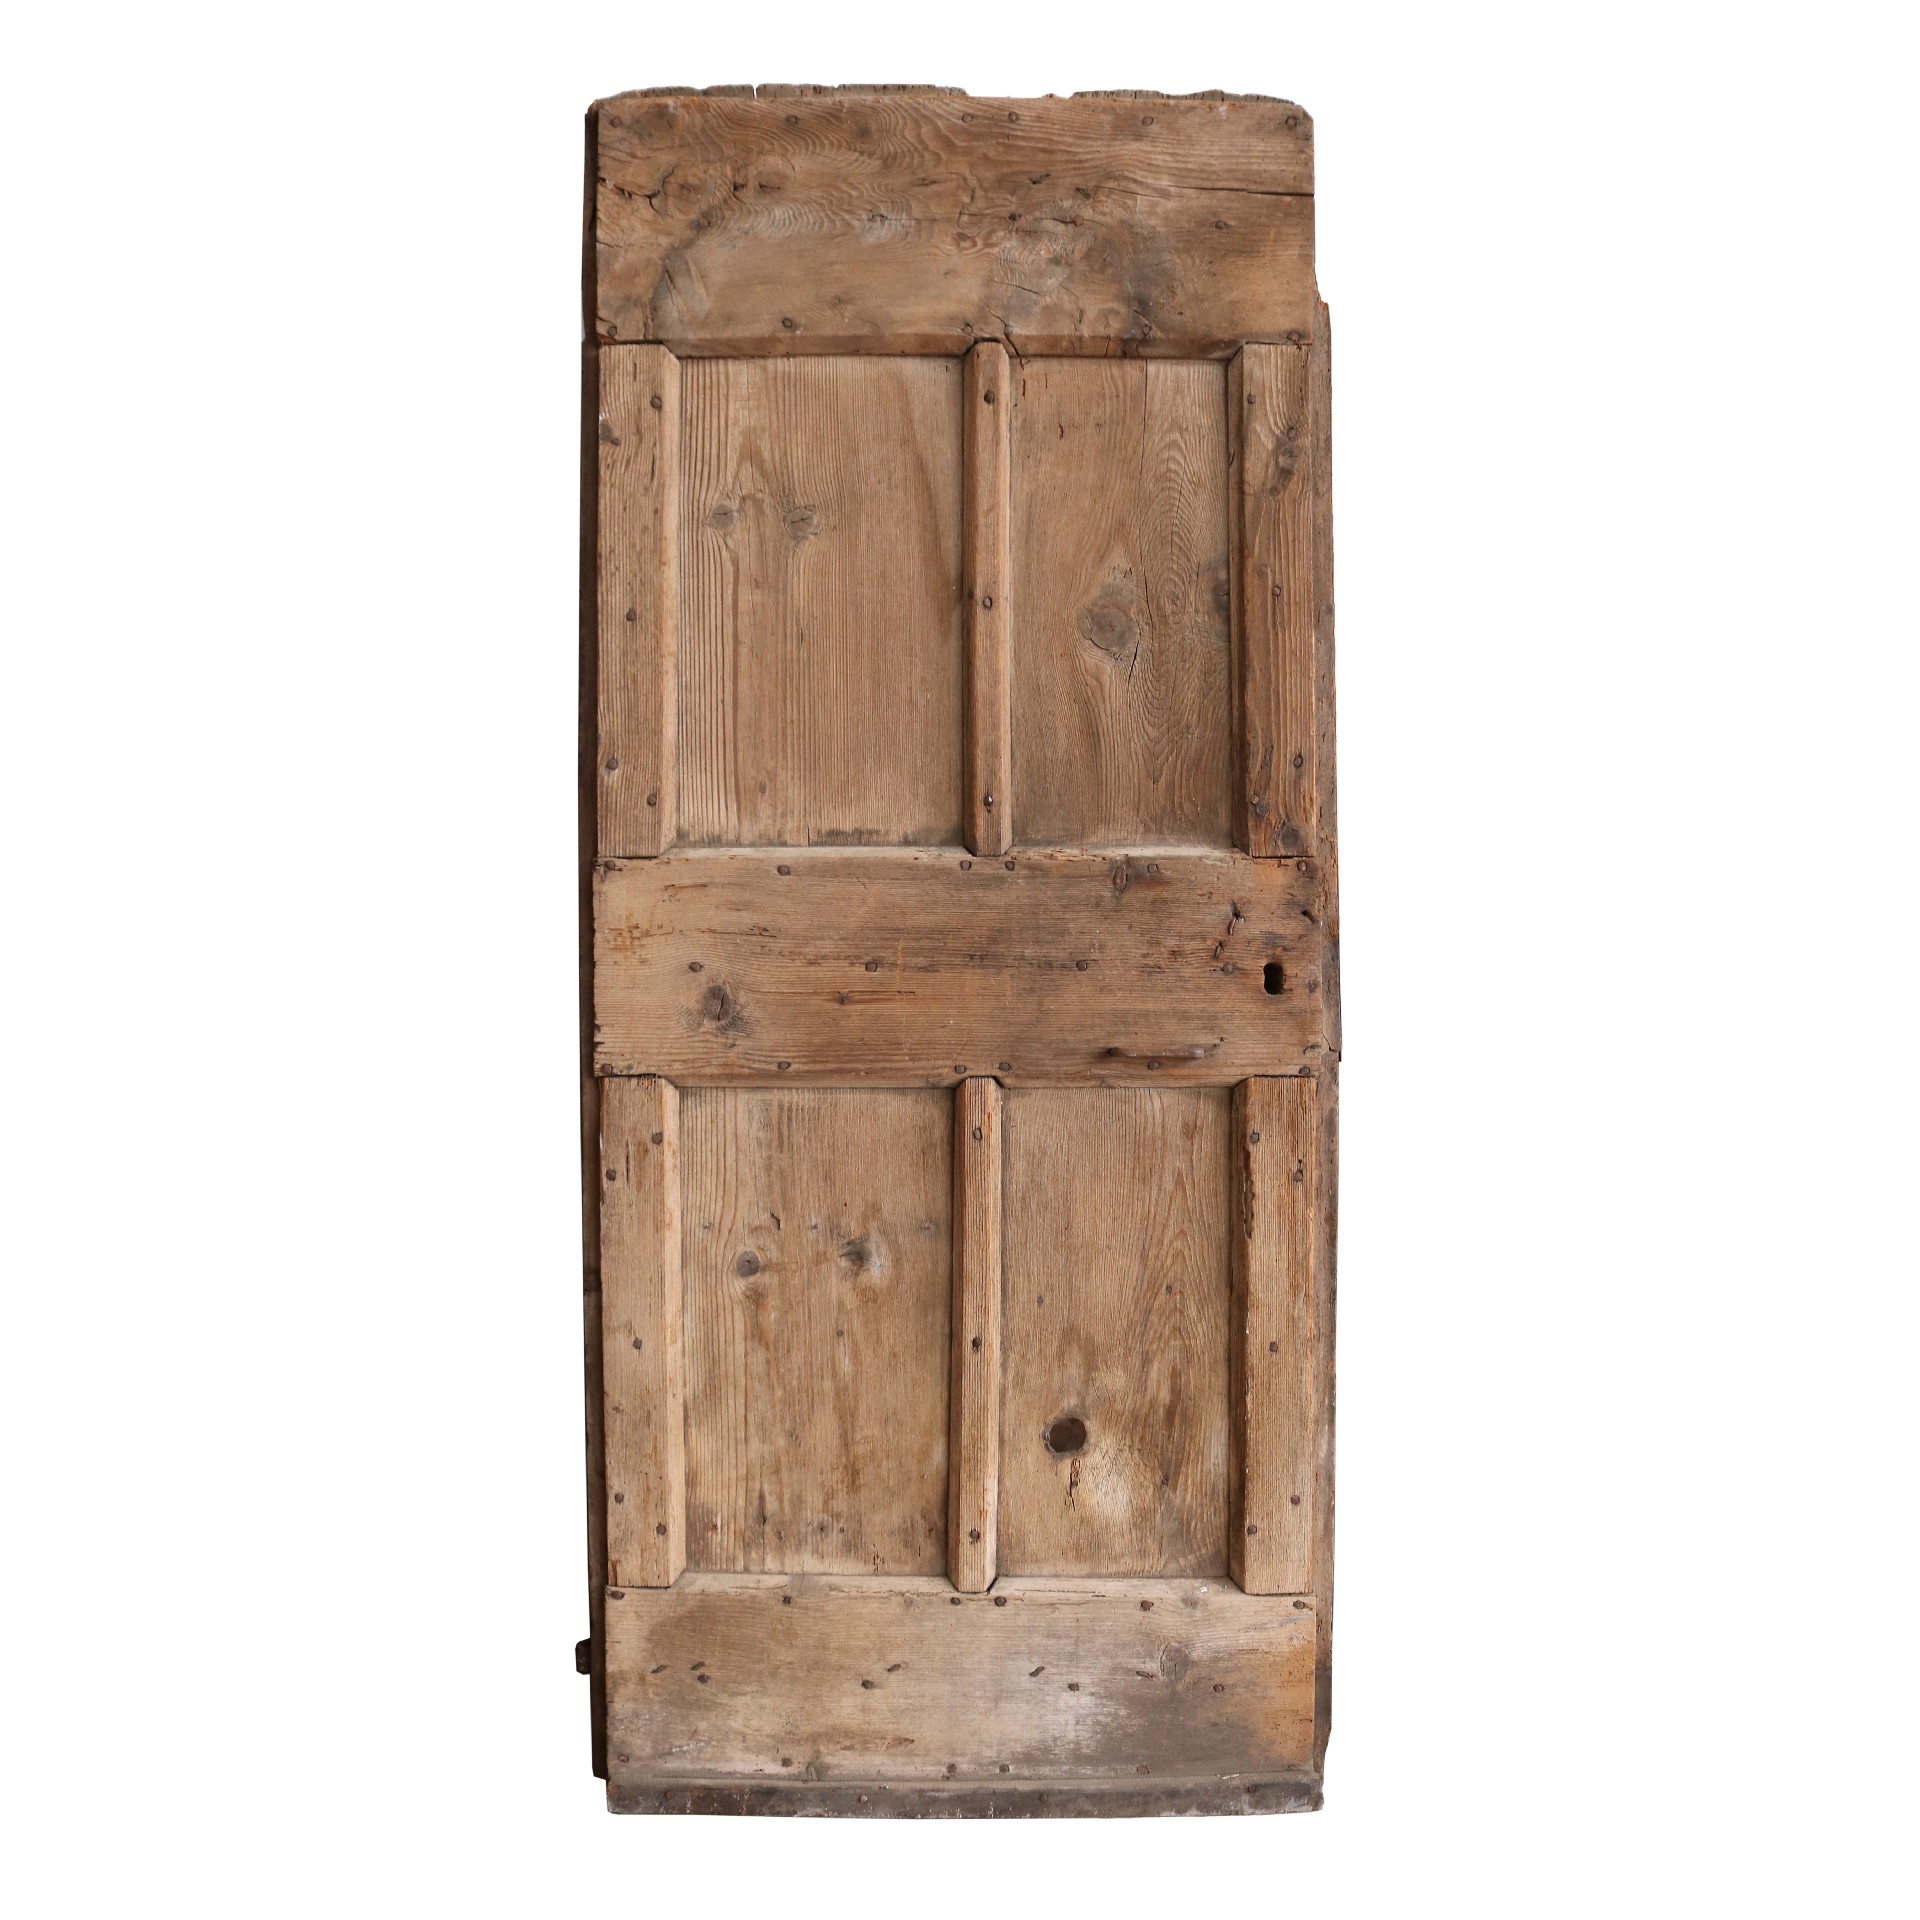 Antico portone in legno - Porte Rare - Porte Antiche - Prodotti - Antichità Fiorillo